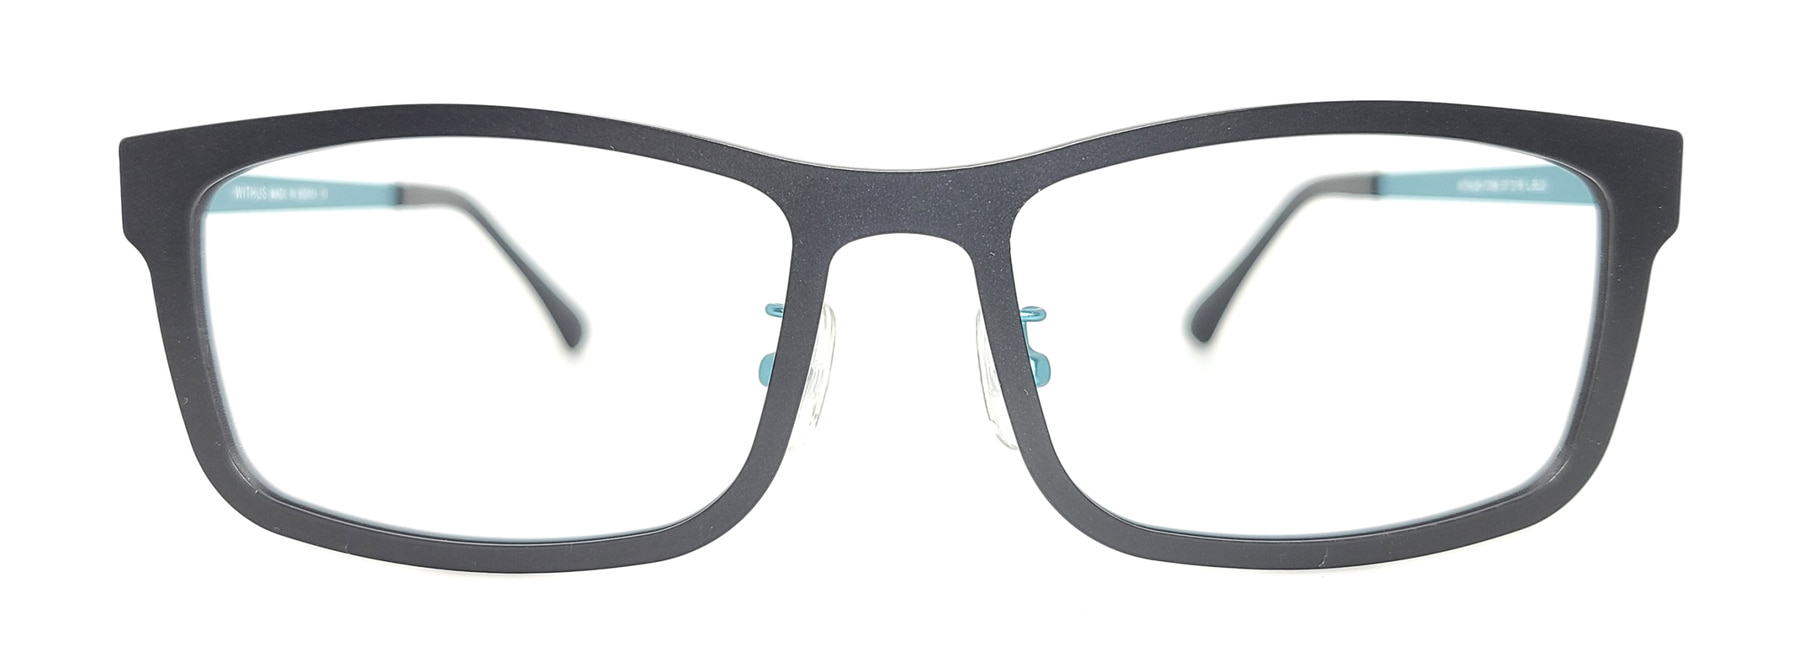 WITHUS-7306, Korean glasses, sunglasses, eyeglasses, glasses